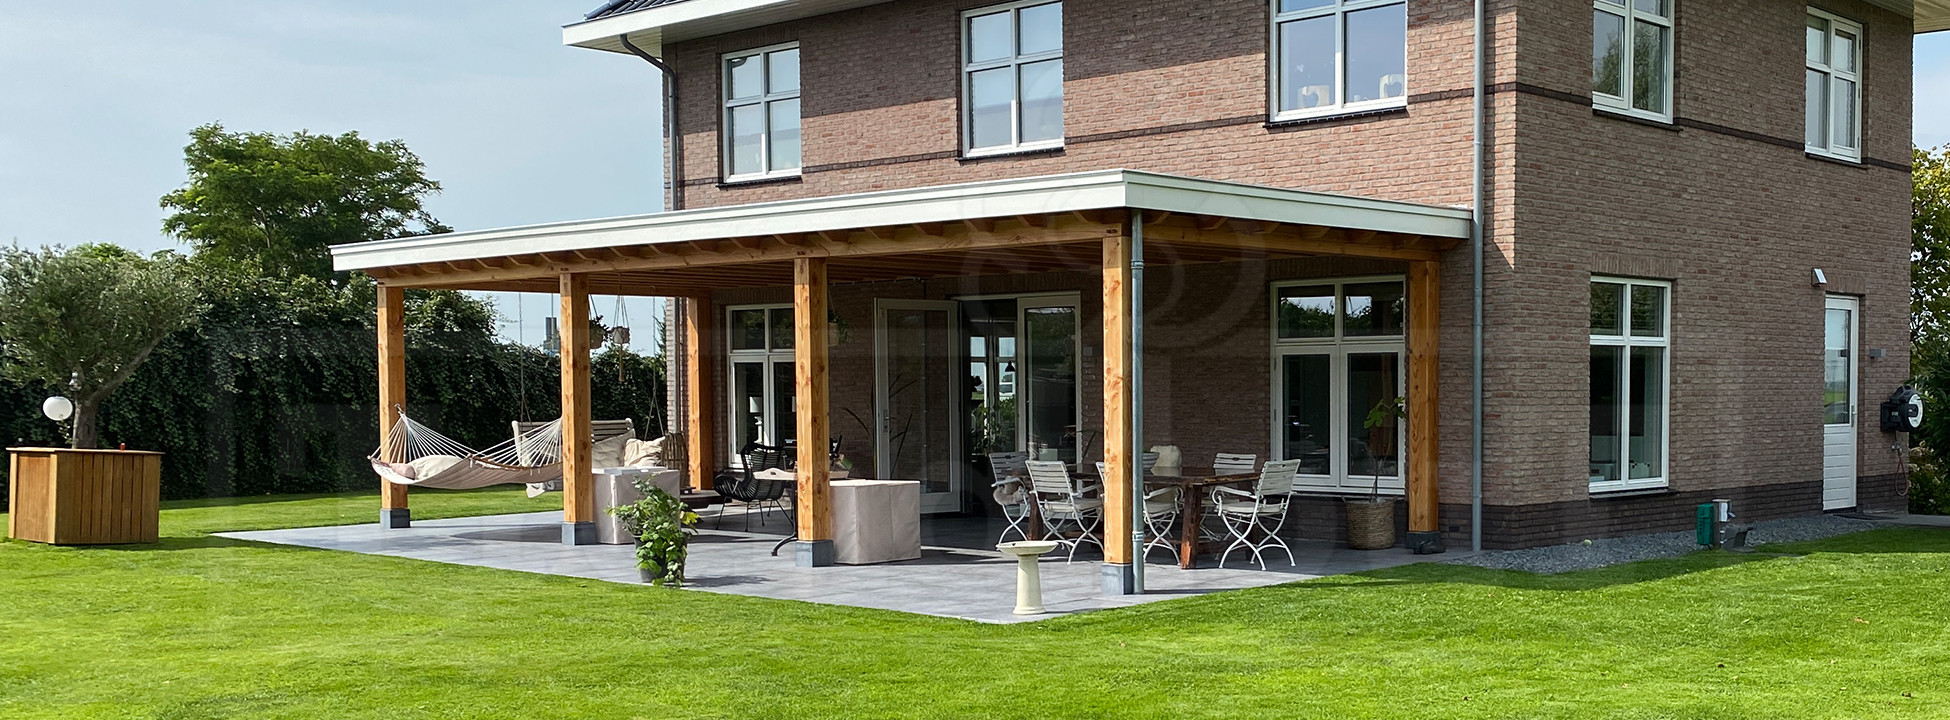 Houten-veranda-overkapping-aan-huis-landelijke-douglas-plat-dak-met-verlichting-terrasoverkapping-hout